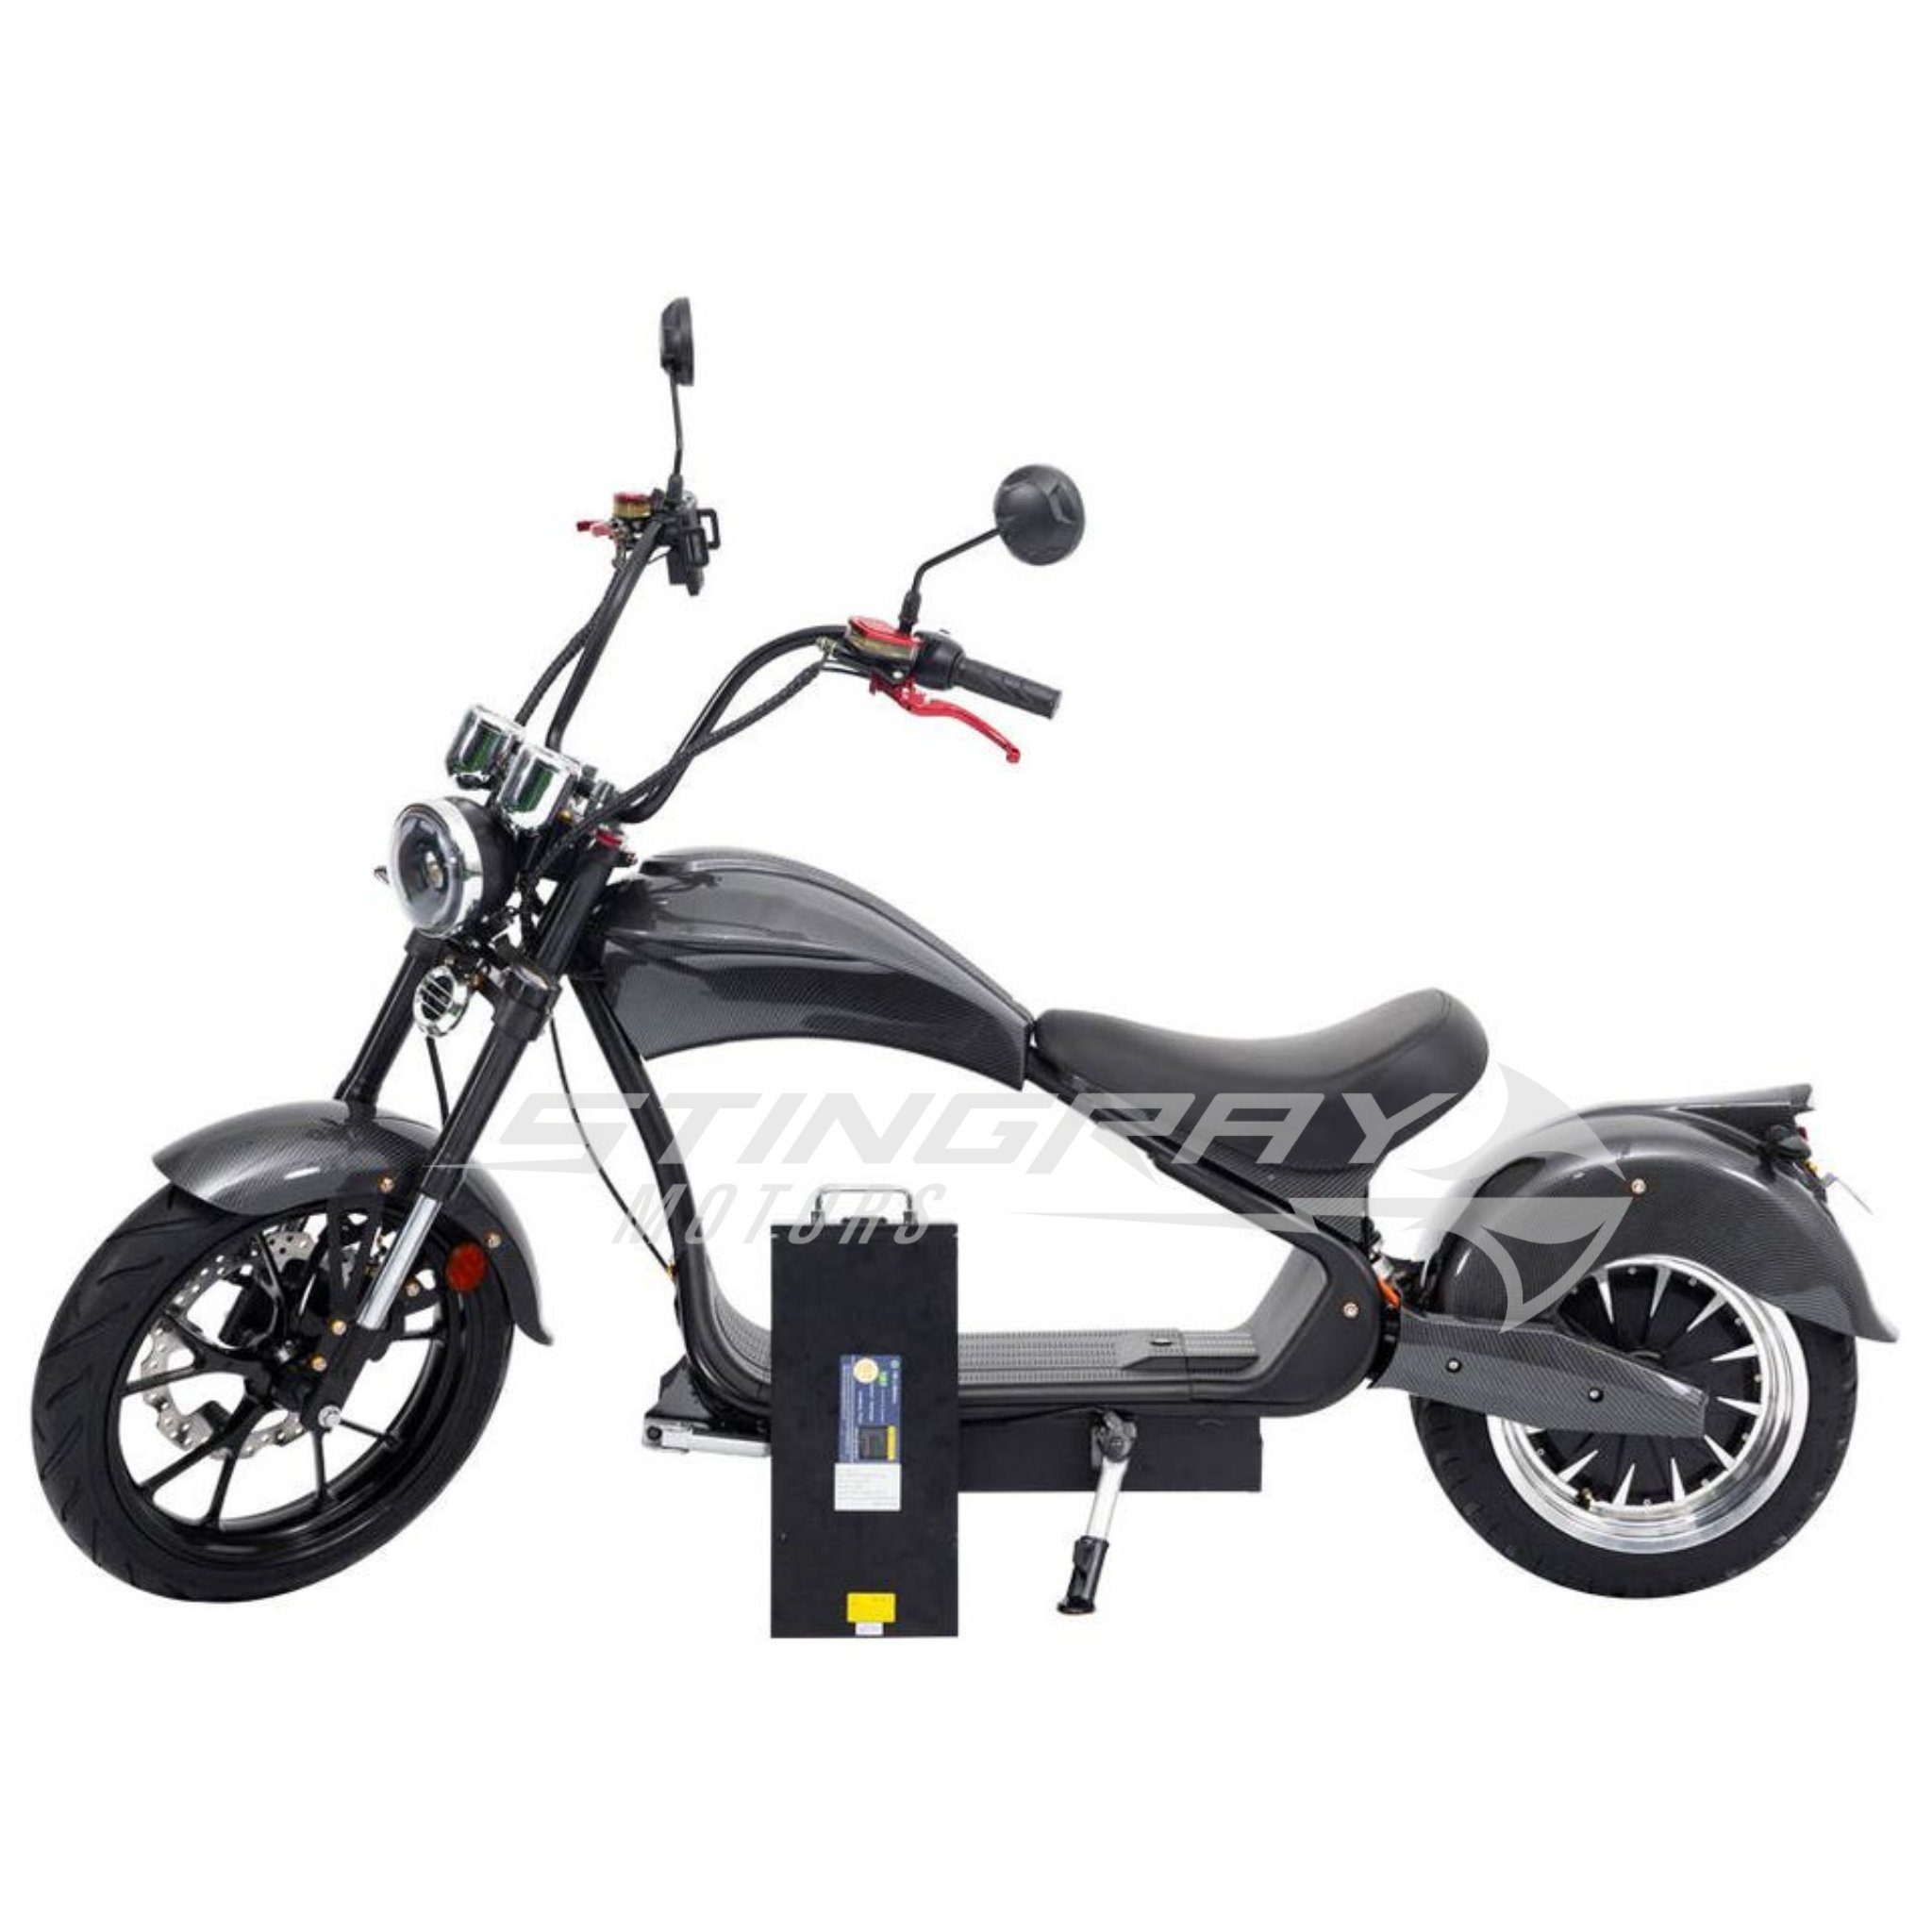 Stingray Motors E-Motorroller Elektroroller - - km/h - 4500 Roller W, E 4500,00 Watt Carbon Chopper Harley km/h 50 50 MH3